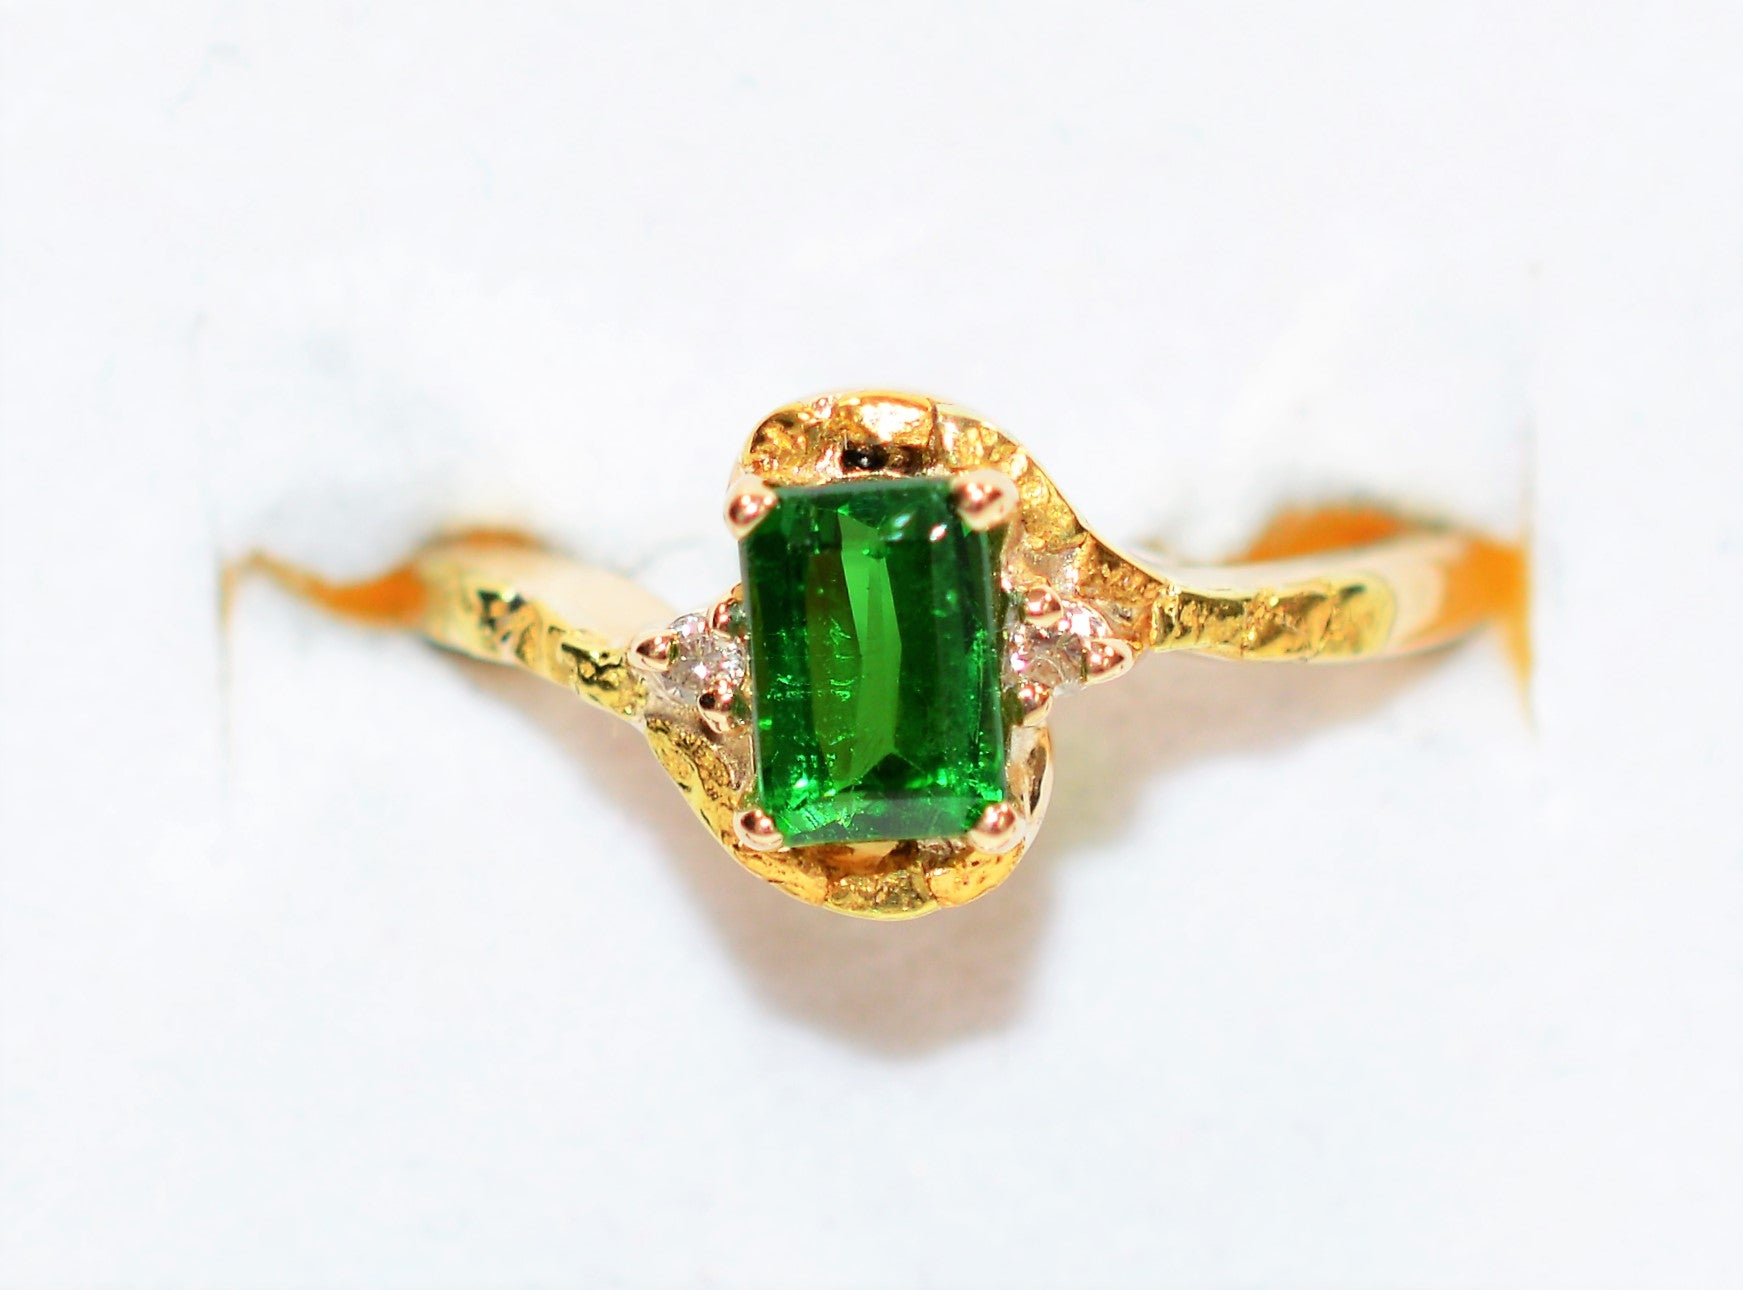 Natural Tsavorite Garnet & Diamond Ring 14K Solid Gold 1.02tcw Nugget Ring Garnet Ring January Birthstone Ring Green Gemstone Ladies Ring